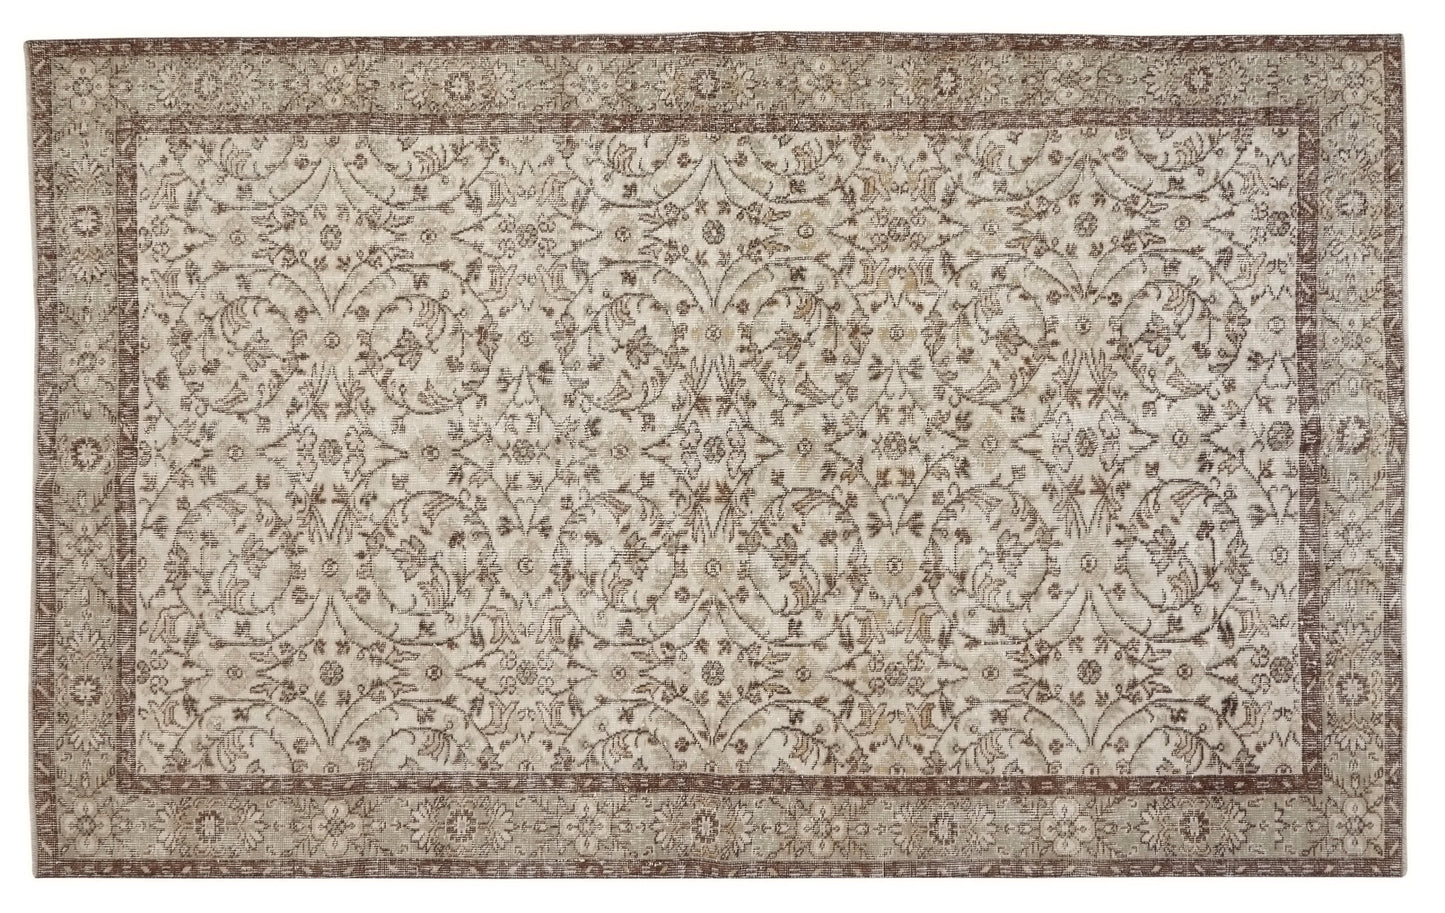 Turkish Neutral Rug, Oushak Rug, 6x9 Fine Vintage rug, Turkey rug, Unique rug, Living room rug, Decorative rug,Wool Rug,One of a kind, 10255